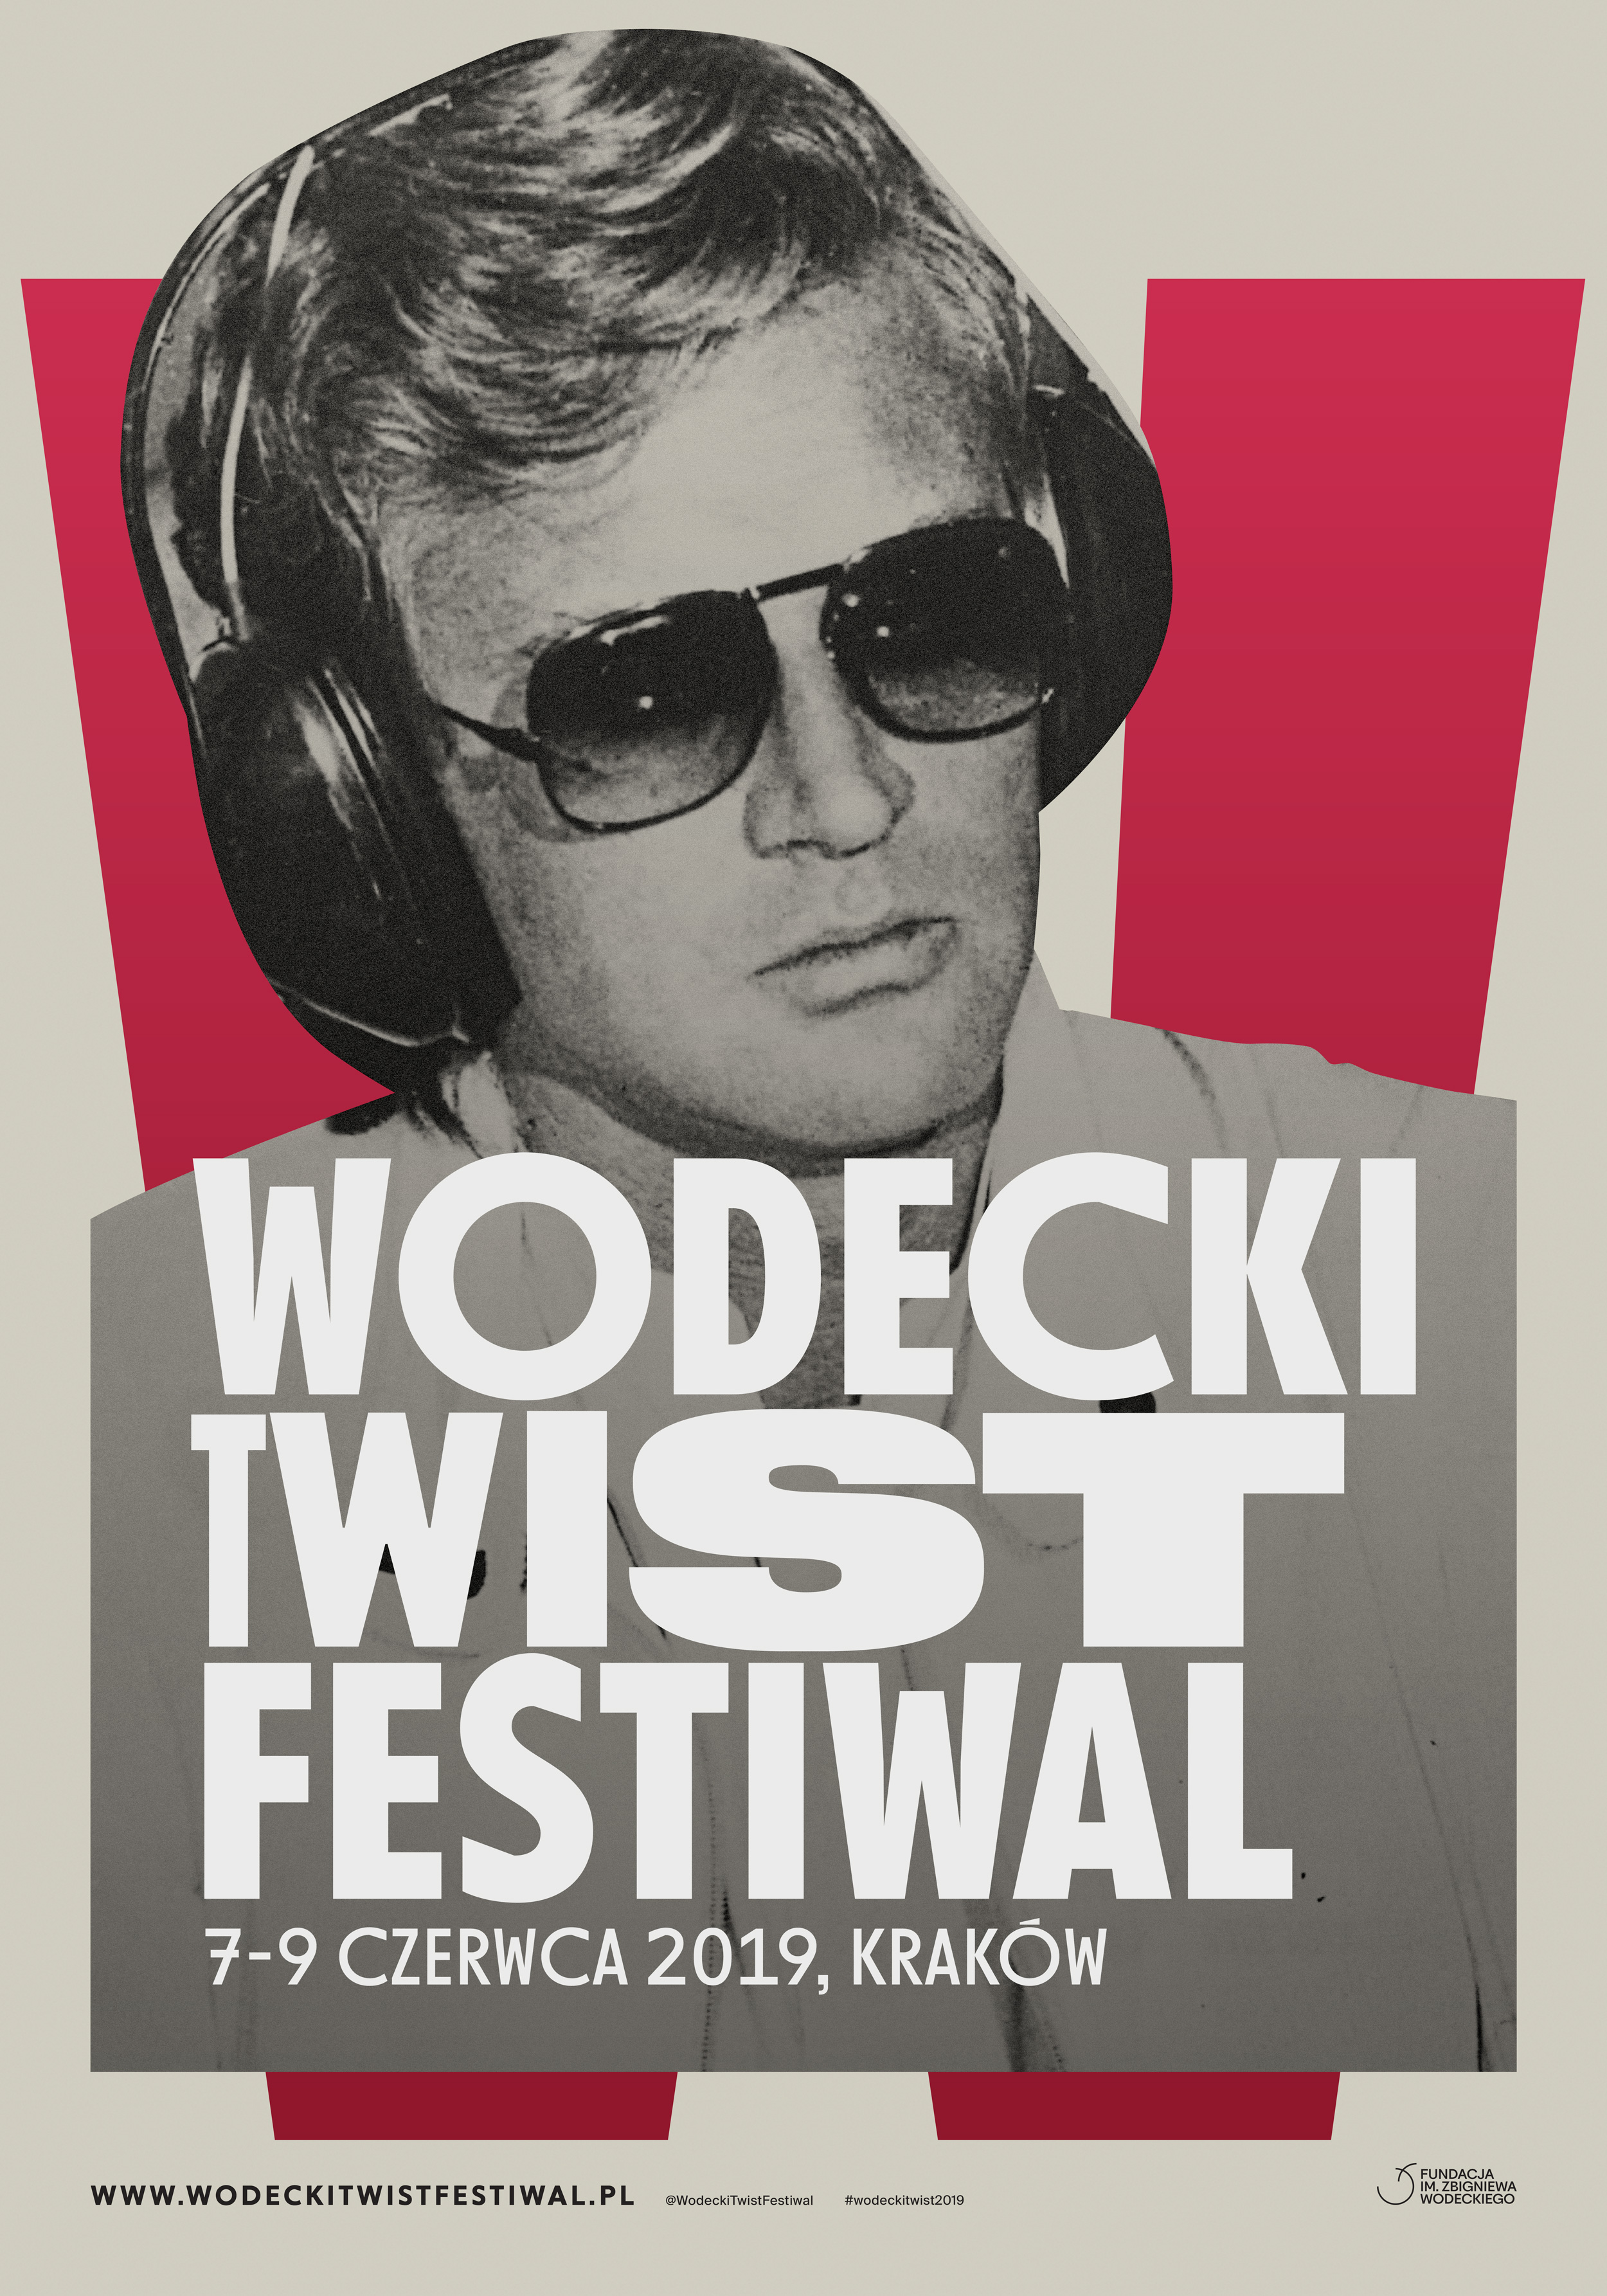 WodeckiTwist_Glowny_plakat